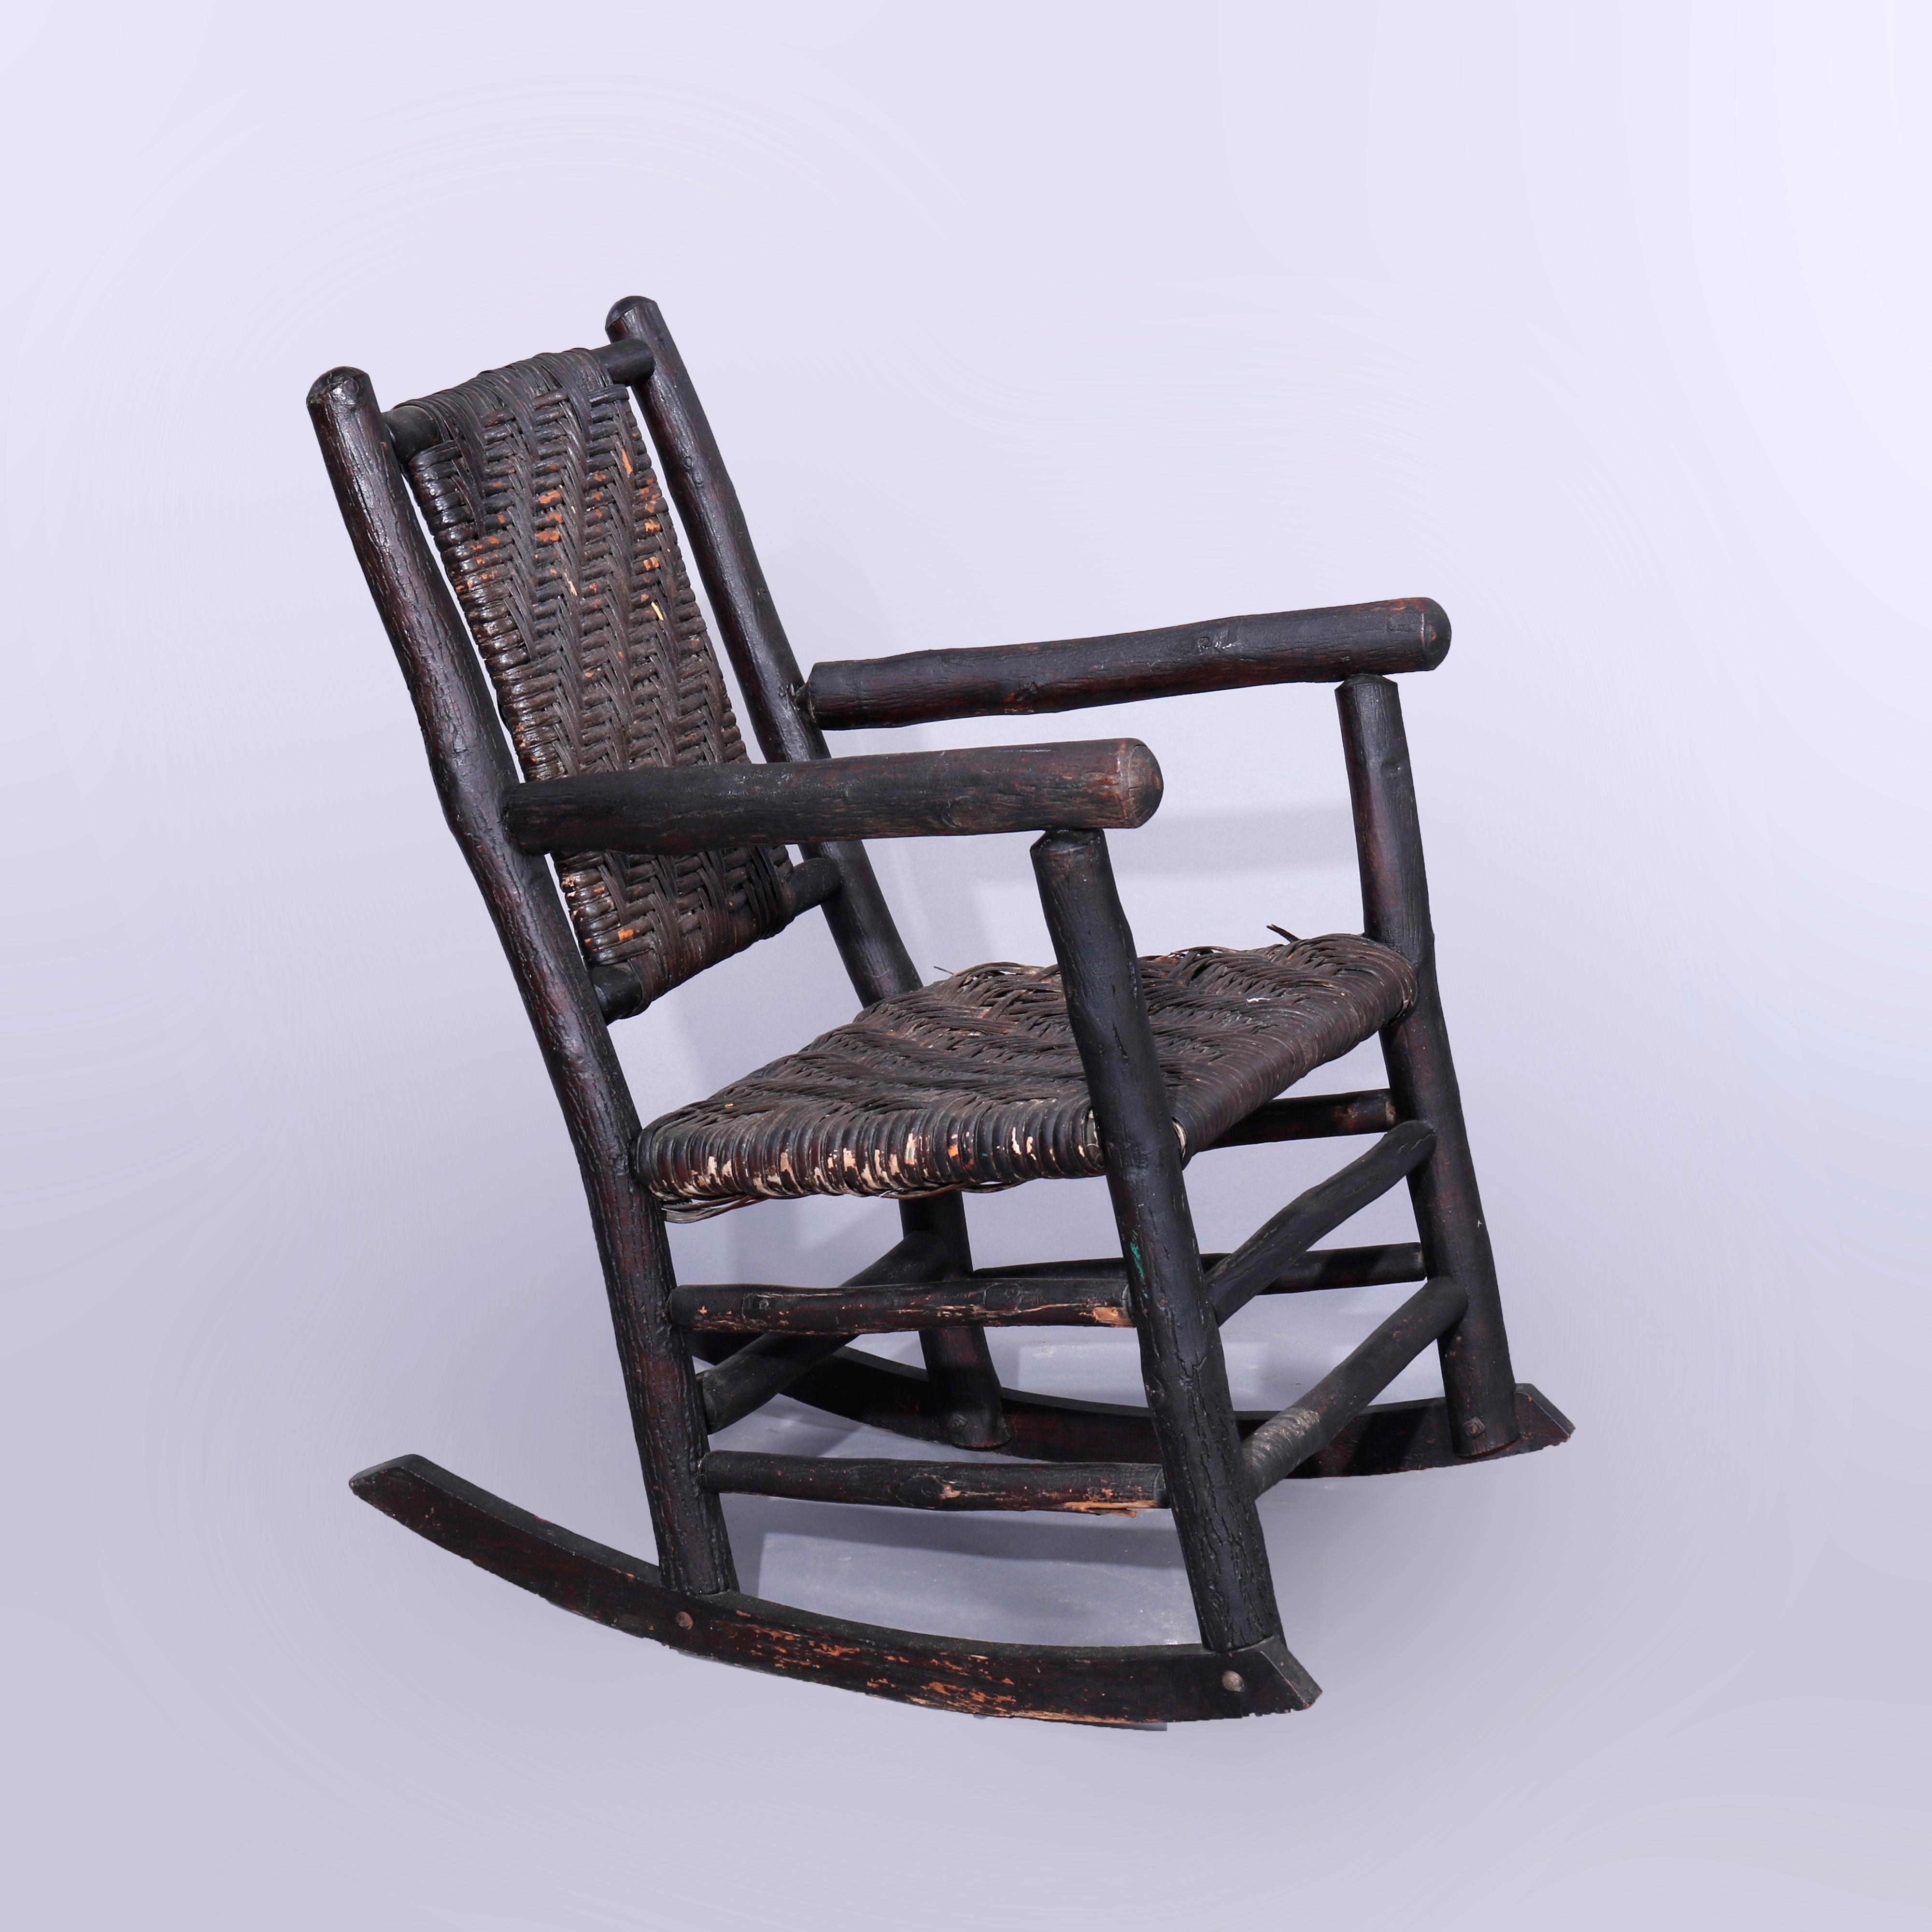 cuban rocking chair